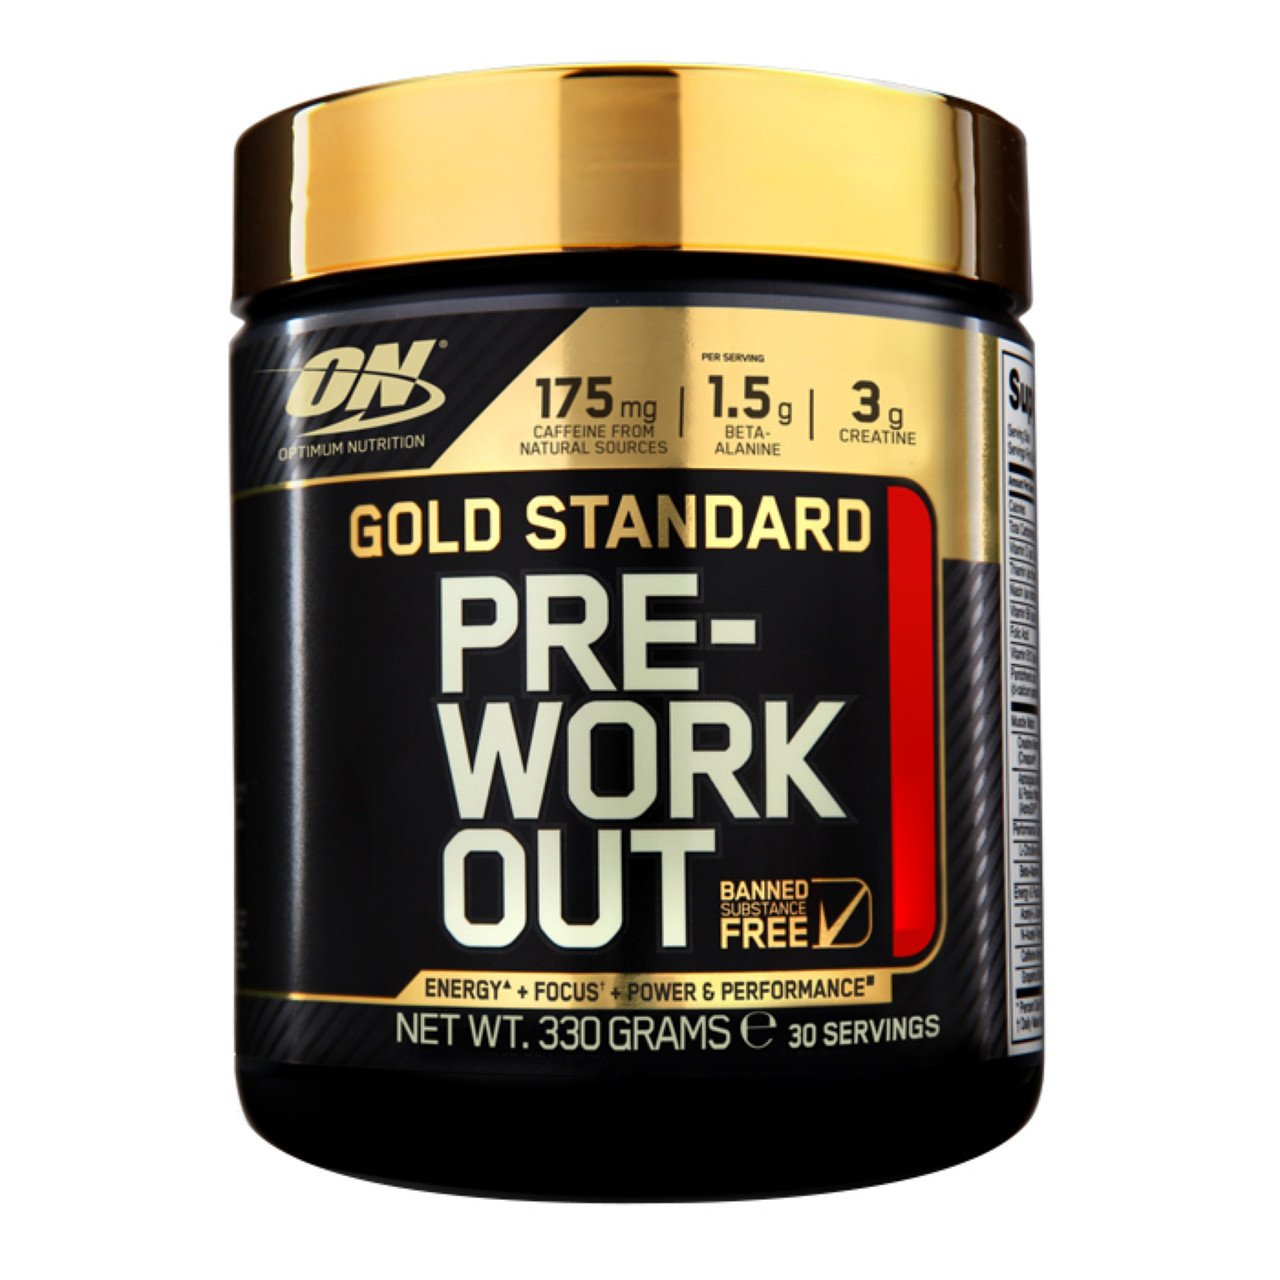 Предтренировочный комплекс Optimum Gold Standard Pre Workout, 330 грамм Арбуз,  мл, Optimum Nutrition. Предтренировочный комплекс. Энергия и выносливость 